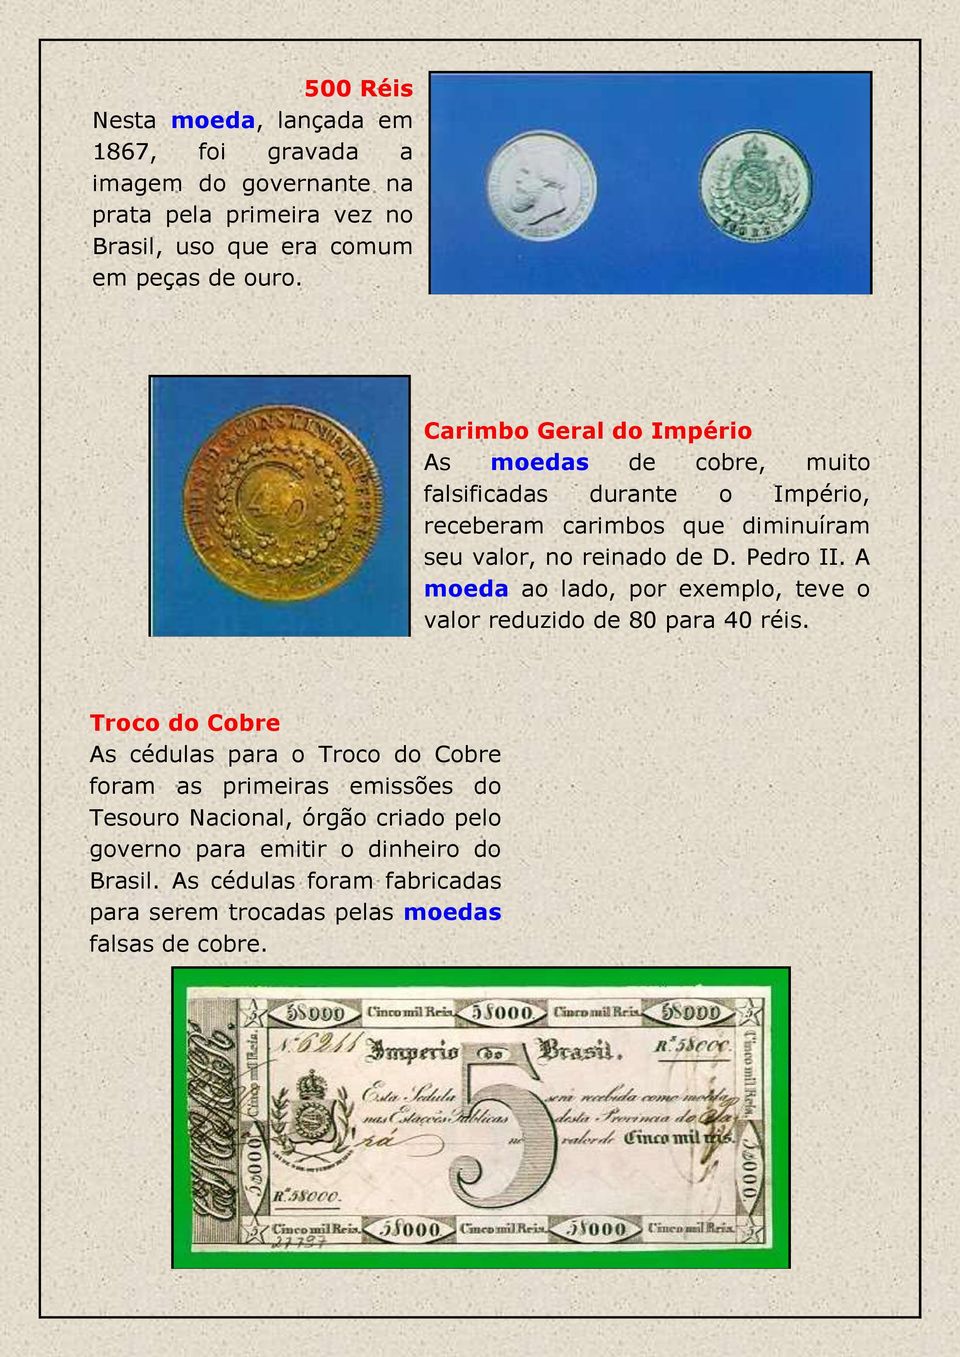 Pedro II. A moeda ao lado, por exemplo, teve o valor reduzido de 80 para 40 réis.